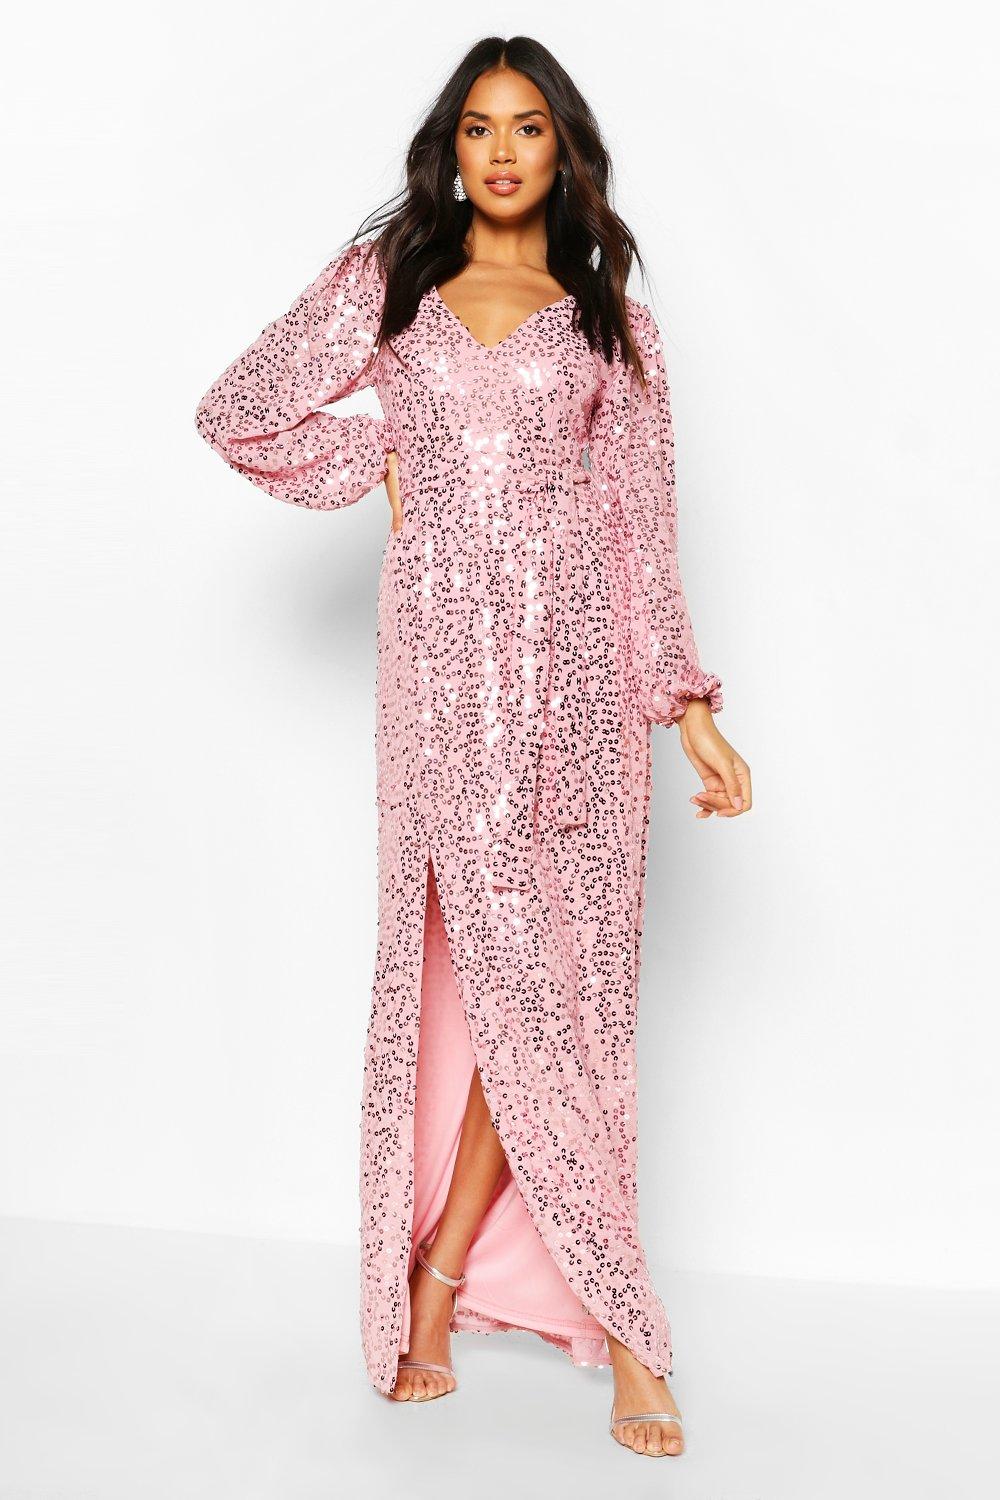 boohoo pink sequin dress